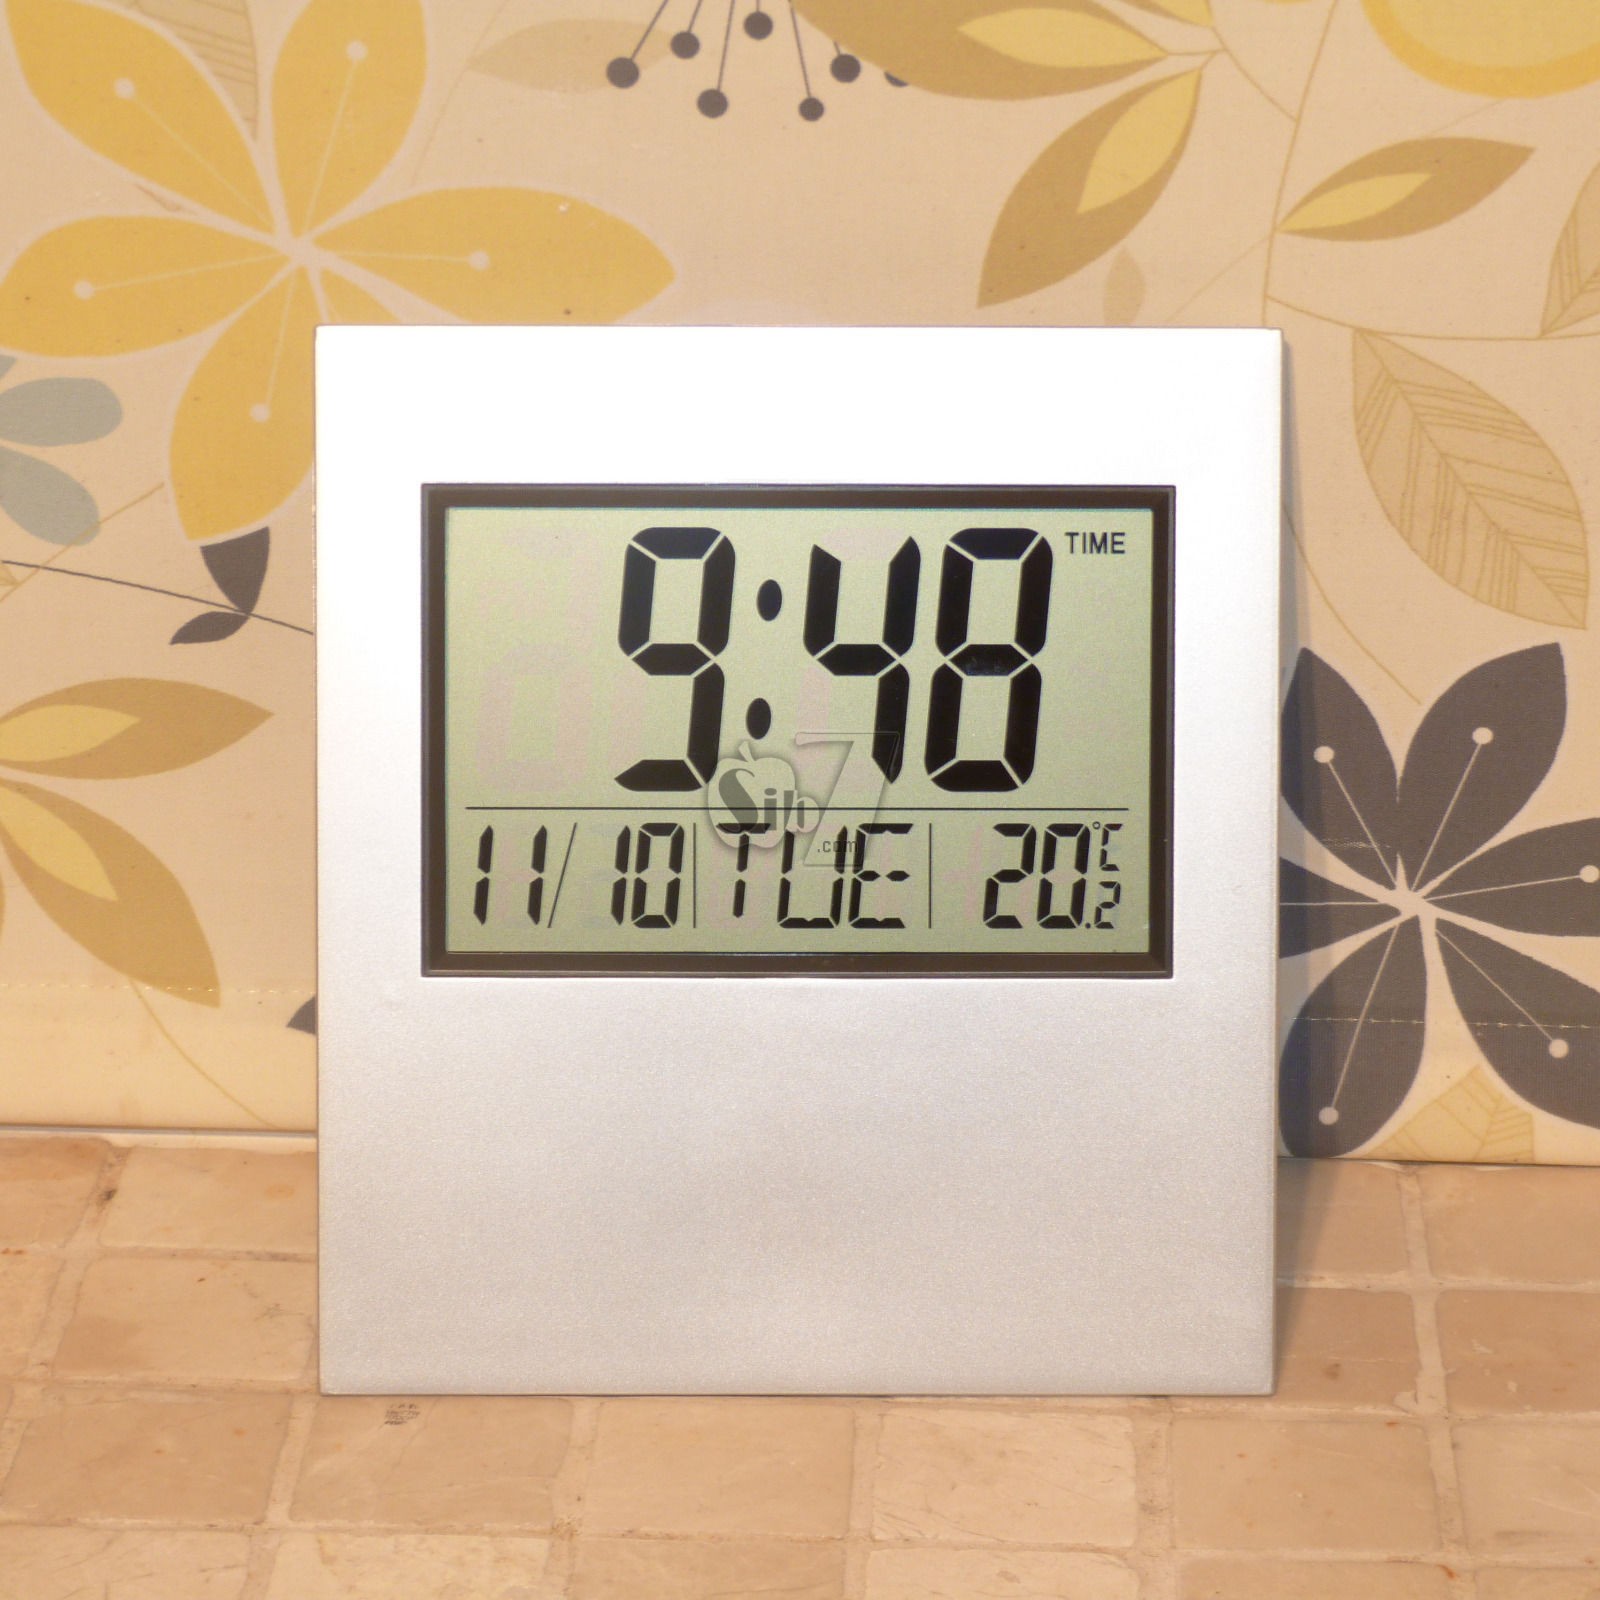 2803 Large Wall Digital clock Calendar & Temperature/ USA format 